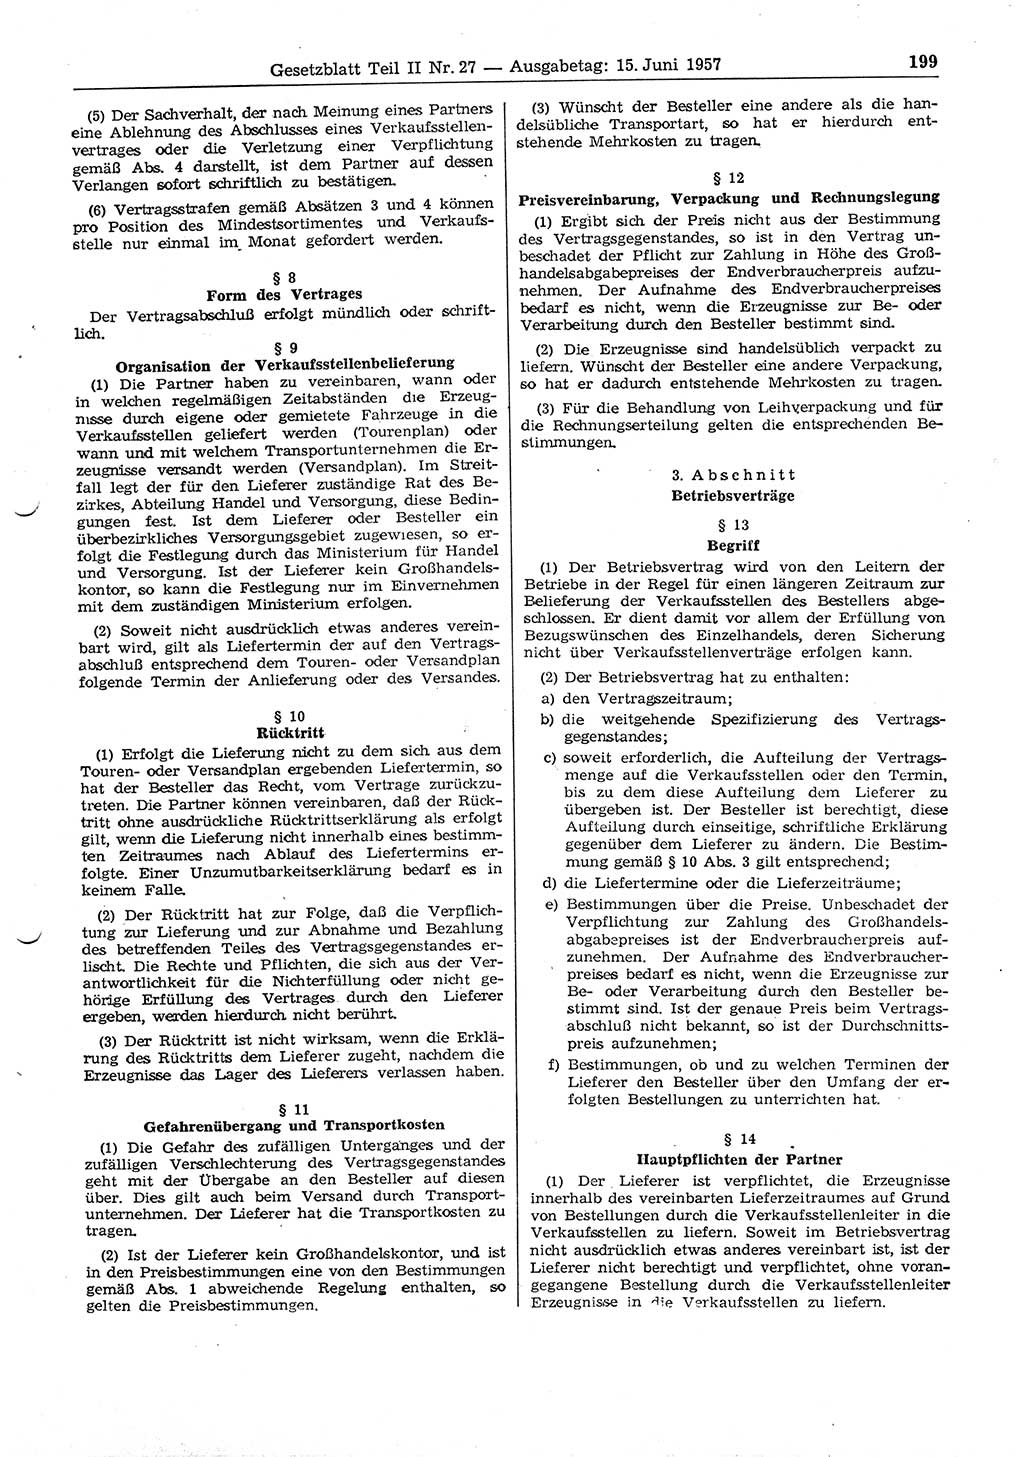 Gesetzblatt (GBl.) der Deutschen Demokratischen Republik (DDR) Teil ⅠⅠ 1957, Seite 199 (GBl. DDR ⅠⅠ 1957, S. 199)